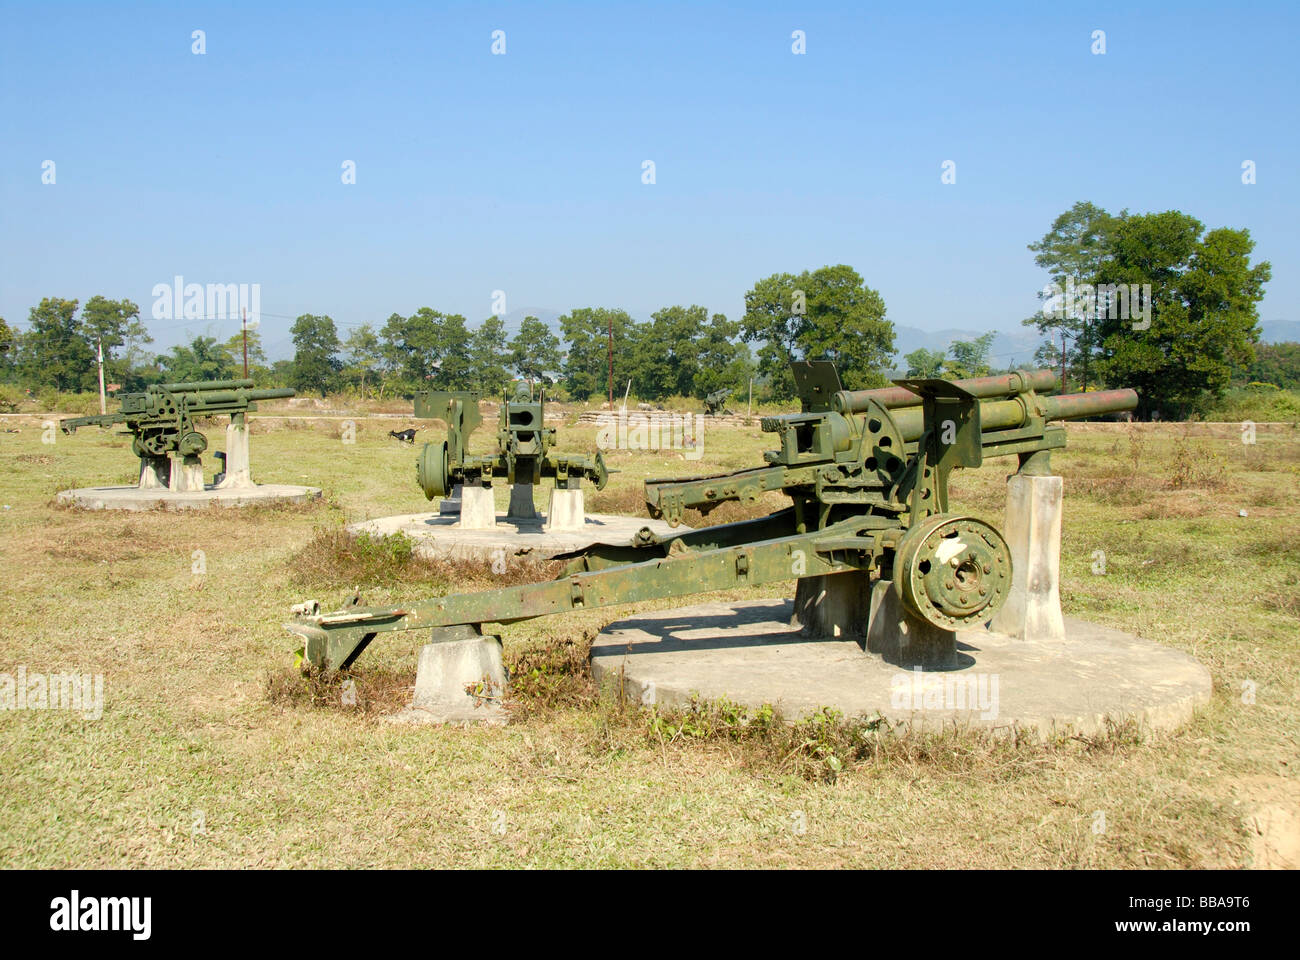 Erster Indochina Krieg 1954, alte französische Artillerie-Kanonen stehen im Feld, Dien Bien Phu, Vietnam, Südostasien, Asien Stockfoto